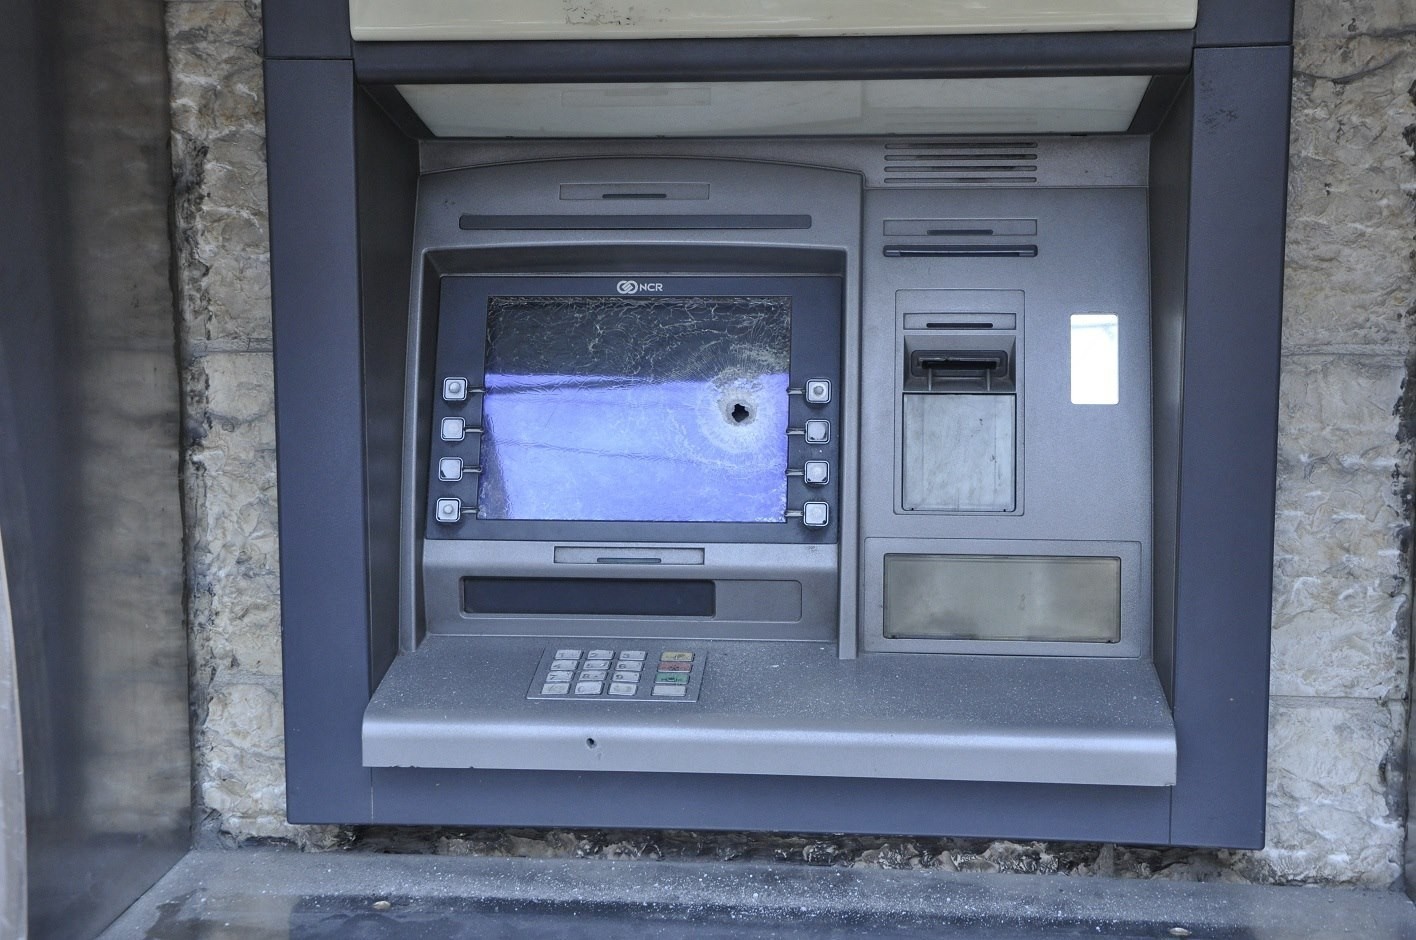 شرطة جرش تُحقق بسرقة أموال من صراف بنك